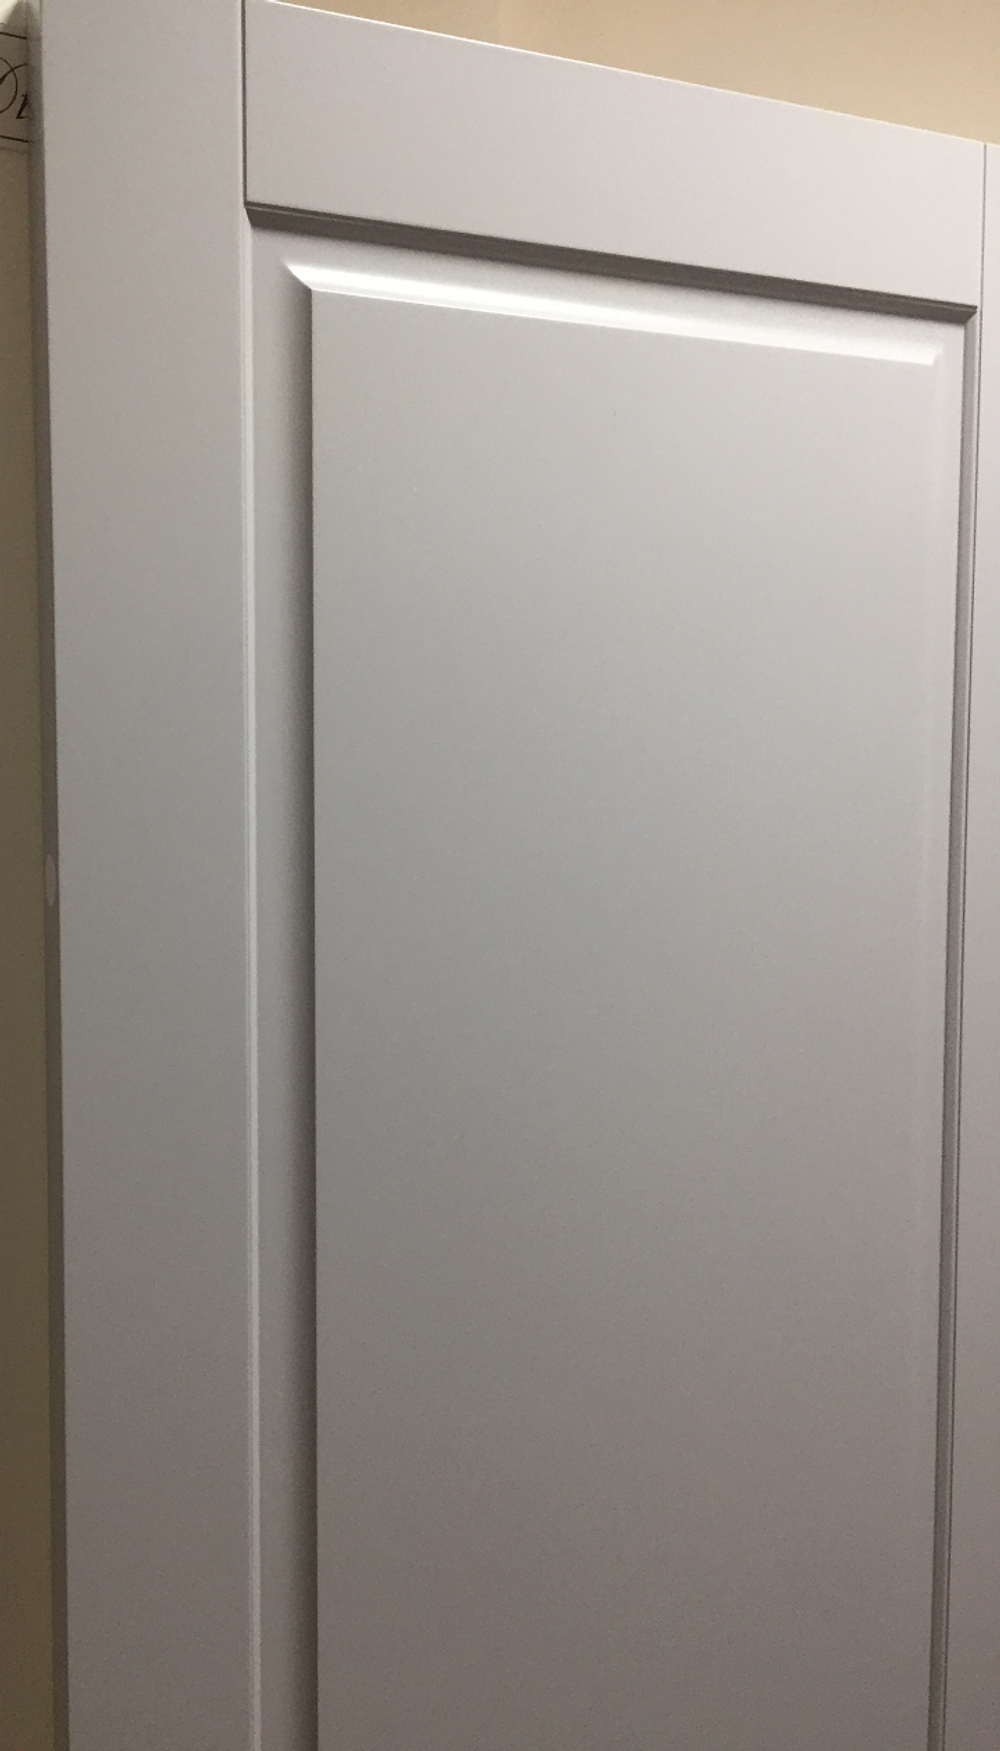 Входная металлическая дверь в квартиру Сенатор Эталон 3К Антик серебро Стокгольм софт светло-серый, без текстуры